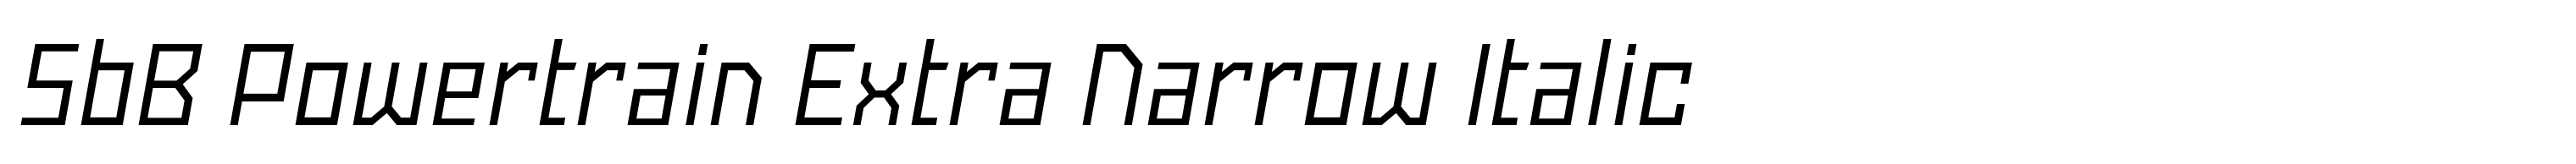 SbB Powertrain Extra Narrow Italic